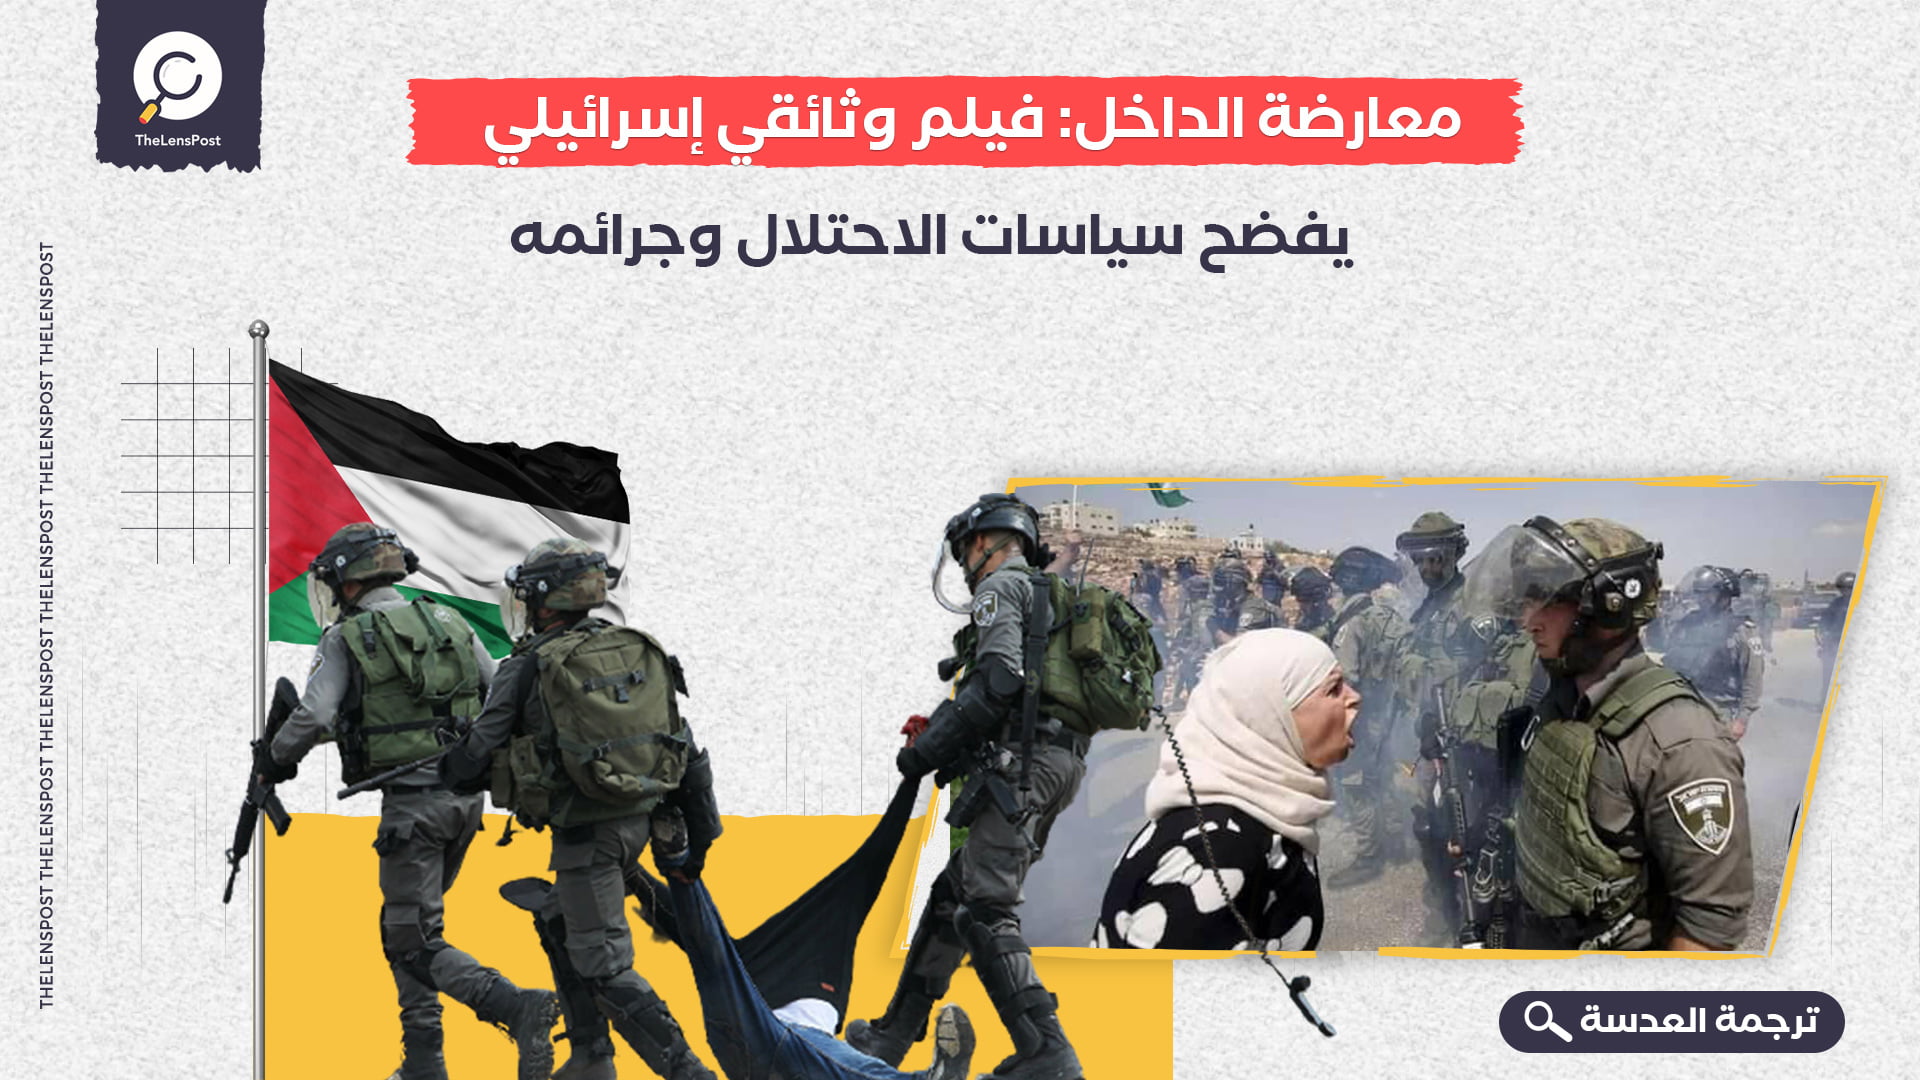 معارضة الداخل: فيلم وثائقي إسرائيلي يفضح سياسات الاحتلال وجرائمه